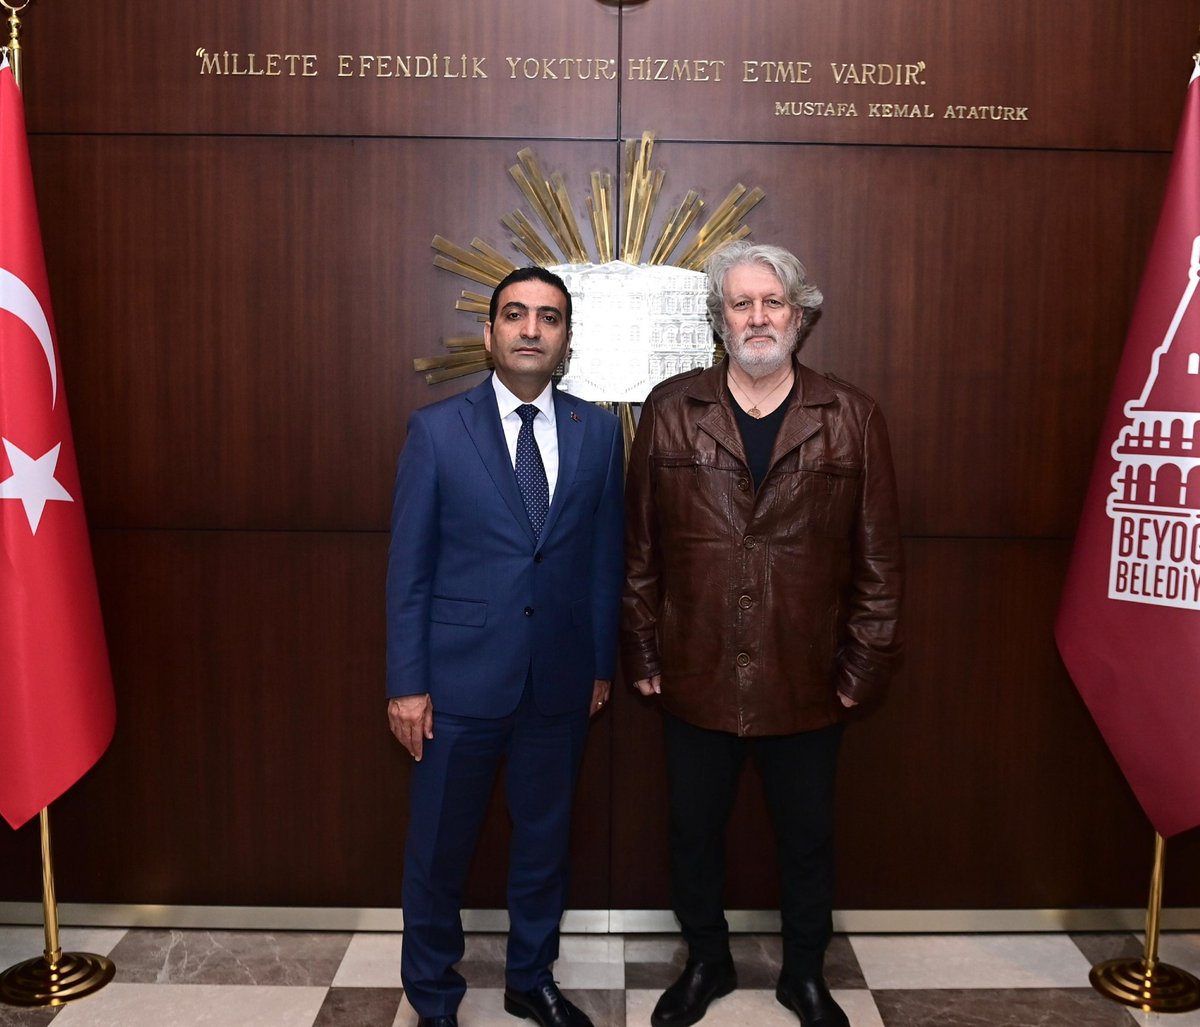 Beyoğlu Belediye Başkanı sn İnan Güney ile makamında eski Beyoğlu'na olan özlemimizi konuştuk.Güzel şeyler olacak Beyoğlu'nda.Başarılar sn.başkan